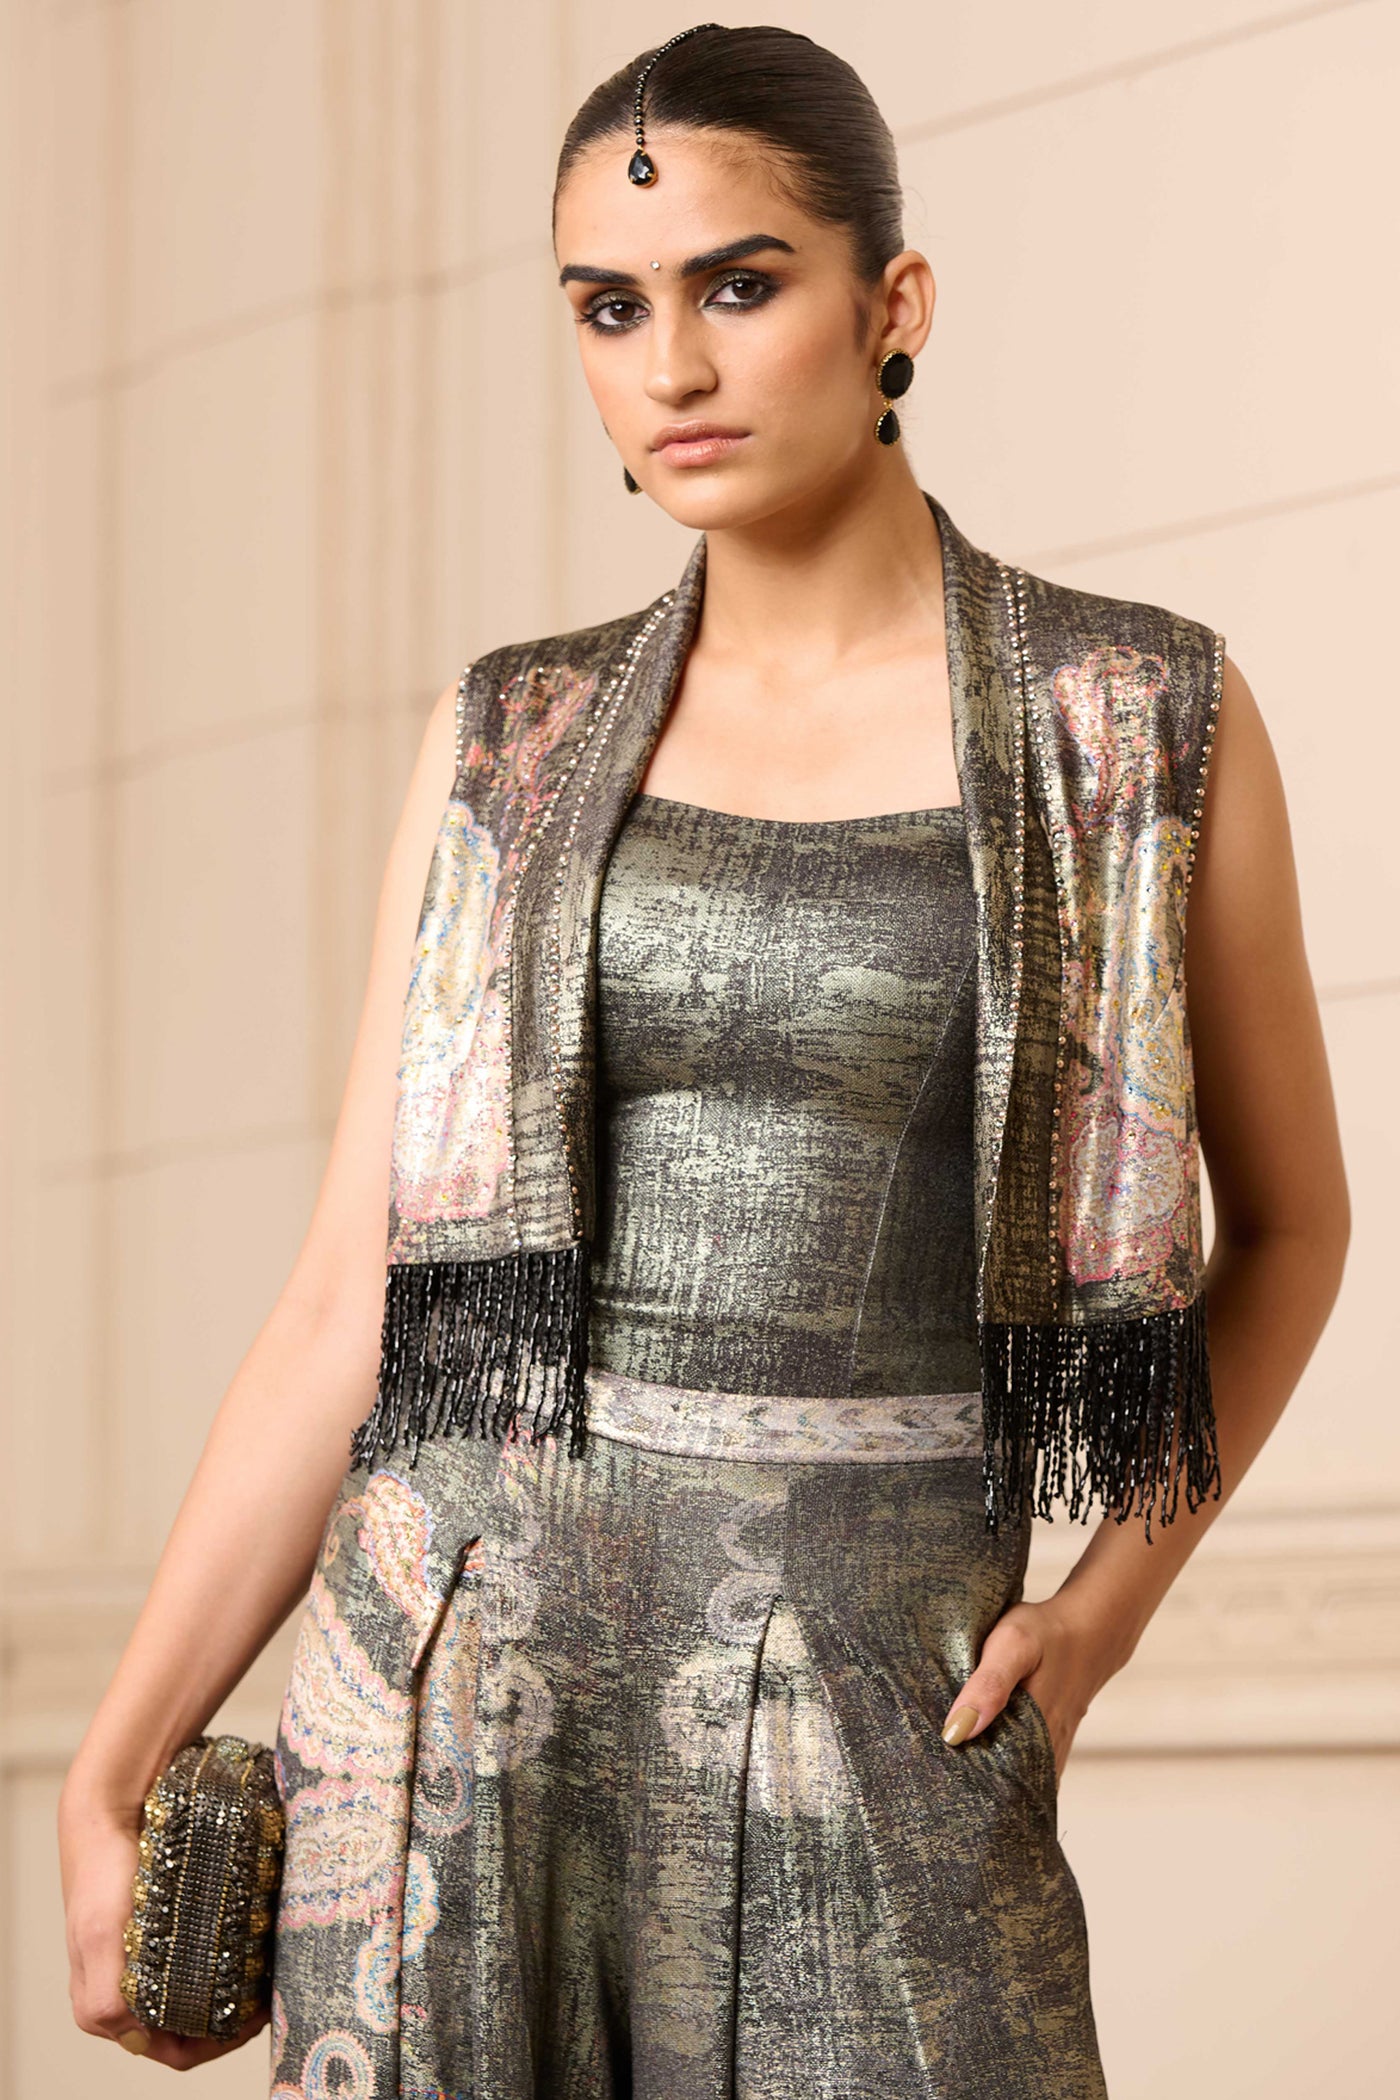 Tarun Tahiliani Printed Gilet indian designer wear online shopping melange singapore